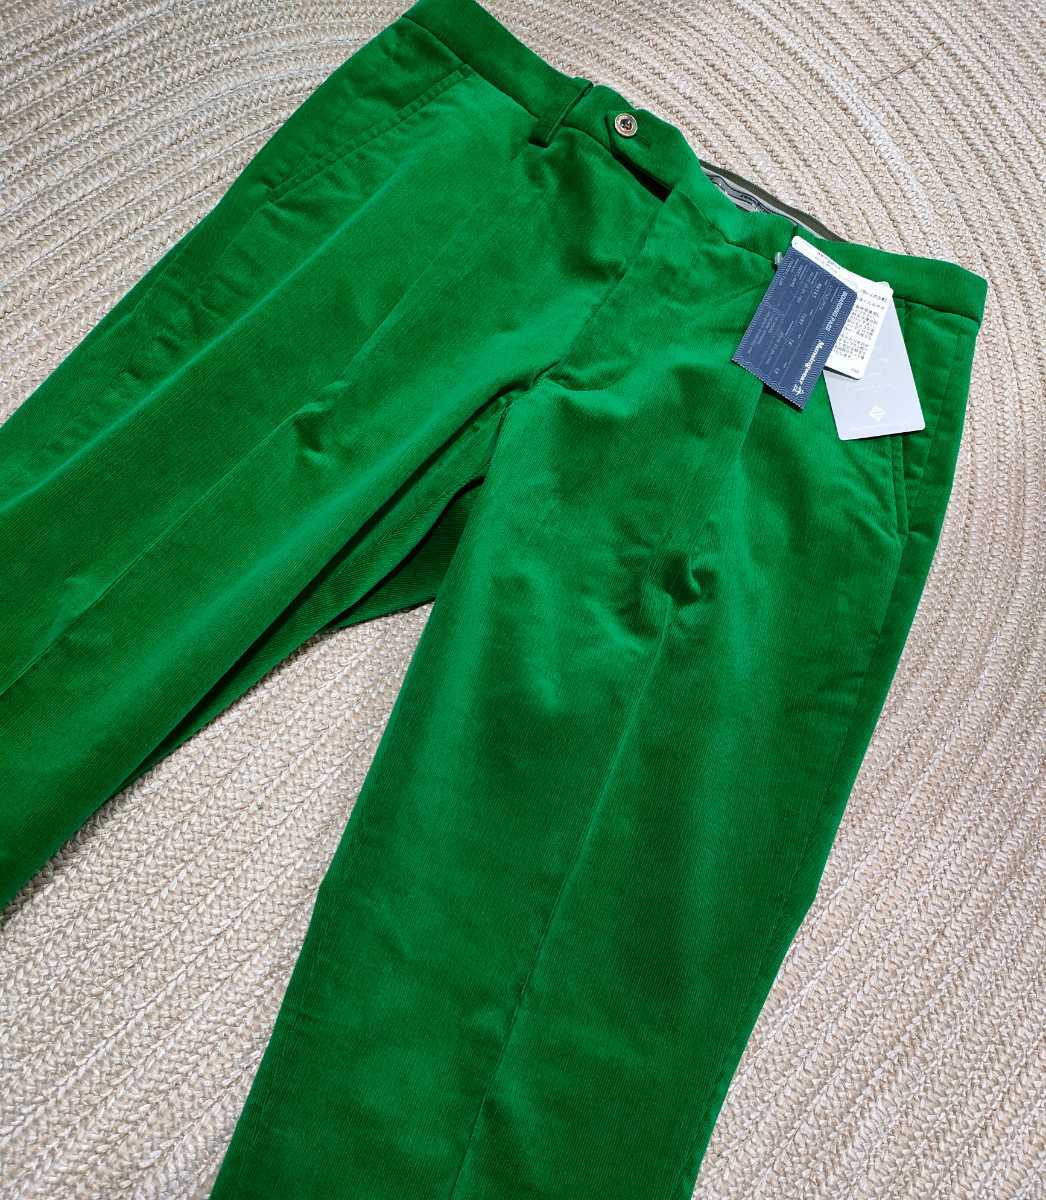 新品 定価20900 マンシング コーデュロイ ストレッチ パンツ w85 秋冬 緑 グリーン メンズ ゴルフウェア オシャレ Munsingwear